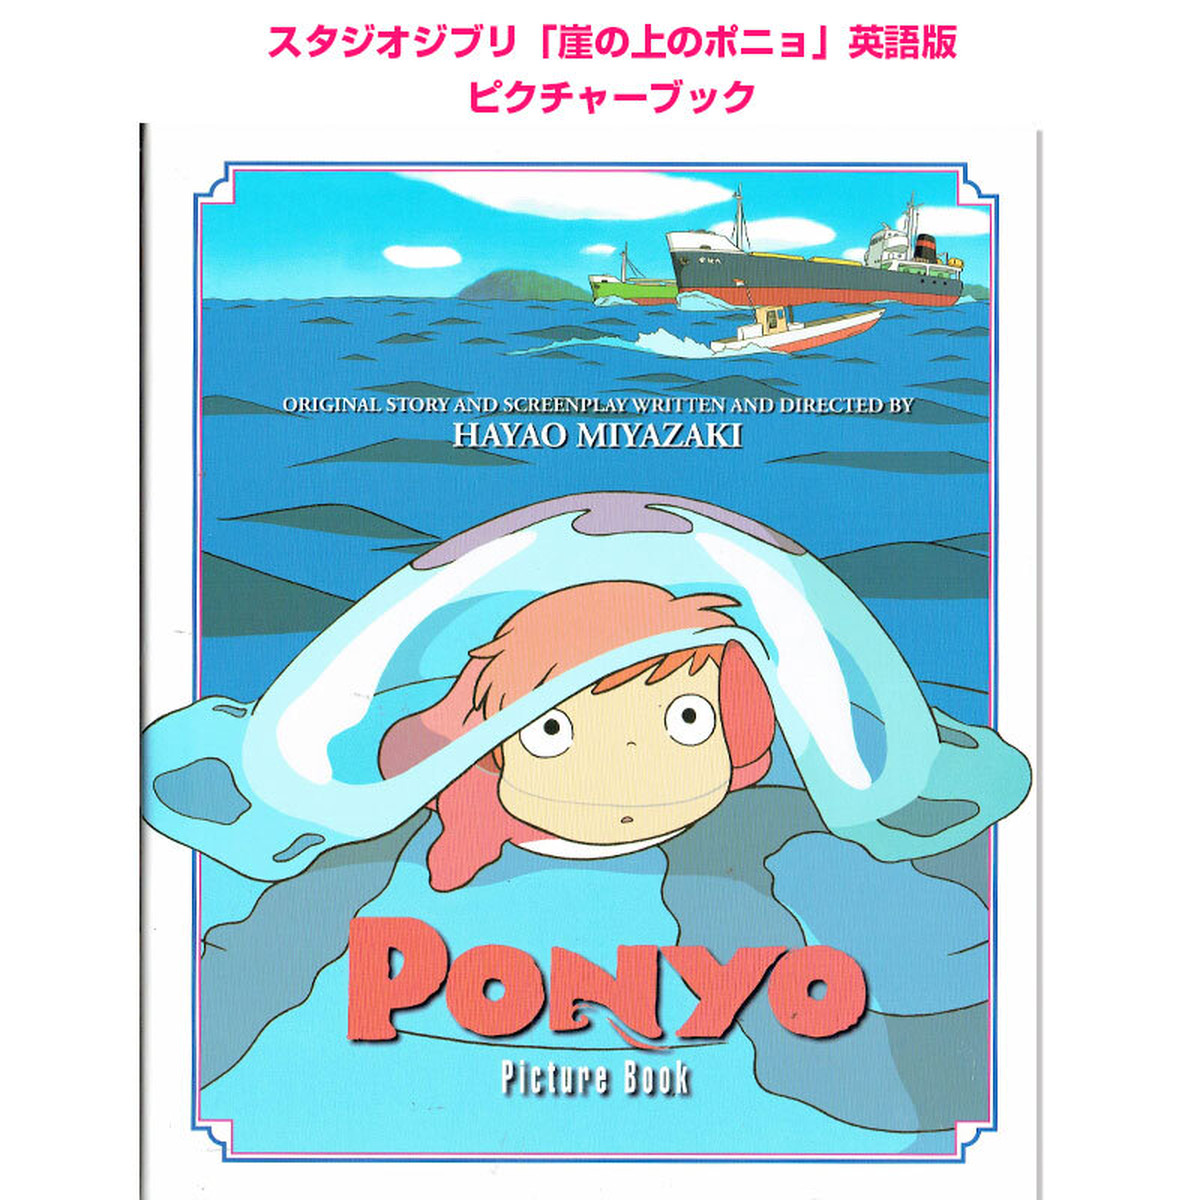 崖の上のポニョ スタジオジブリ 英語版 Ponyo Picture Book 英語絵本の わんこ英語books